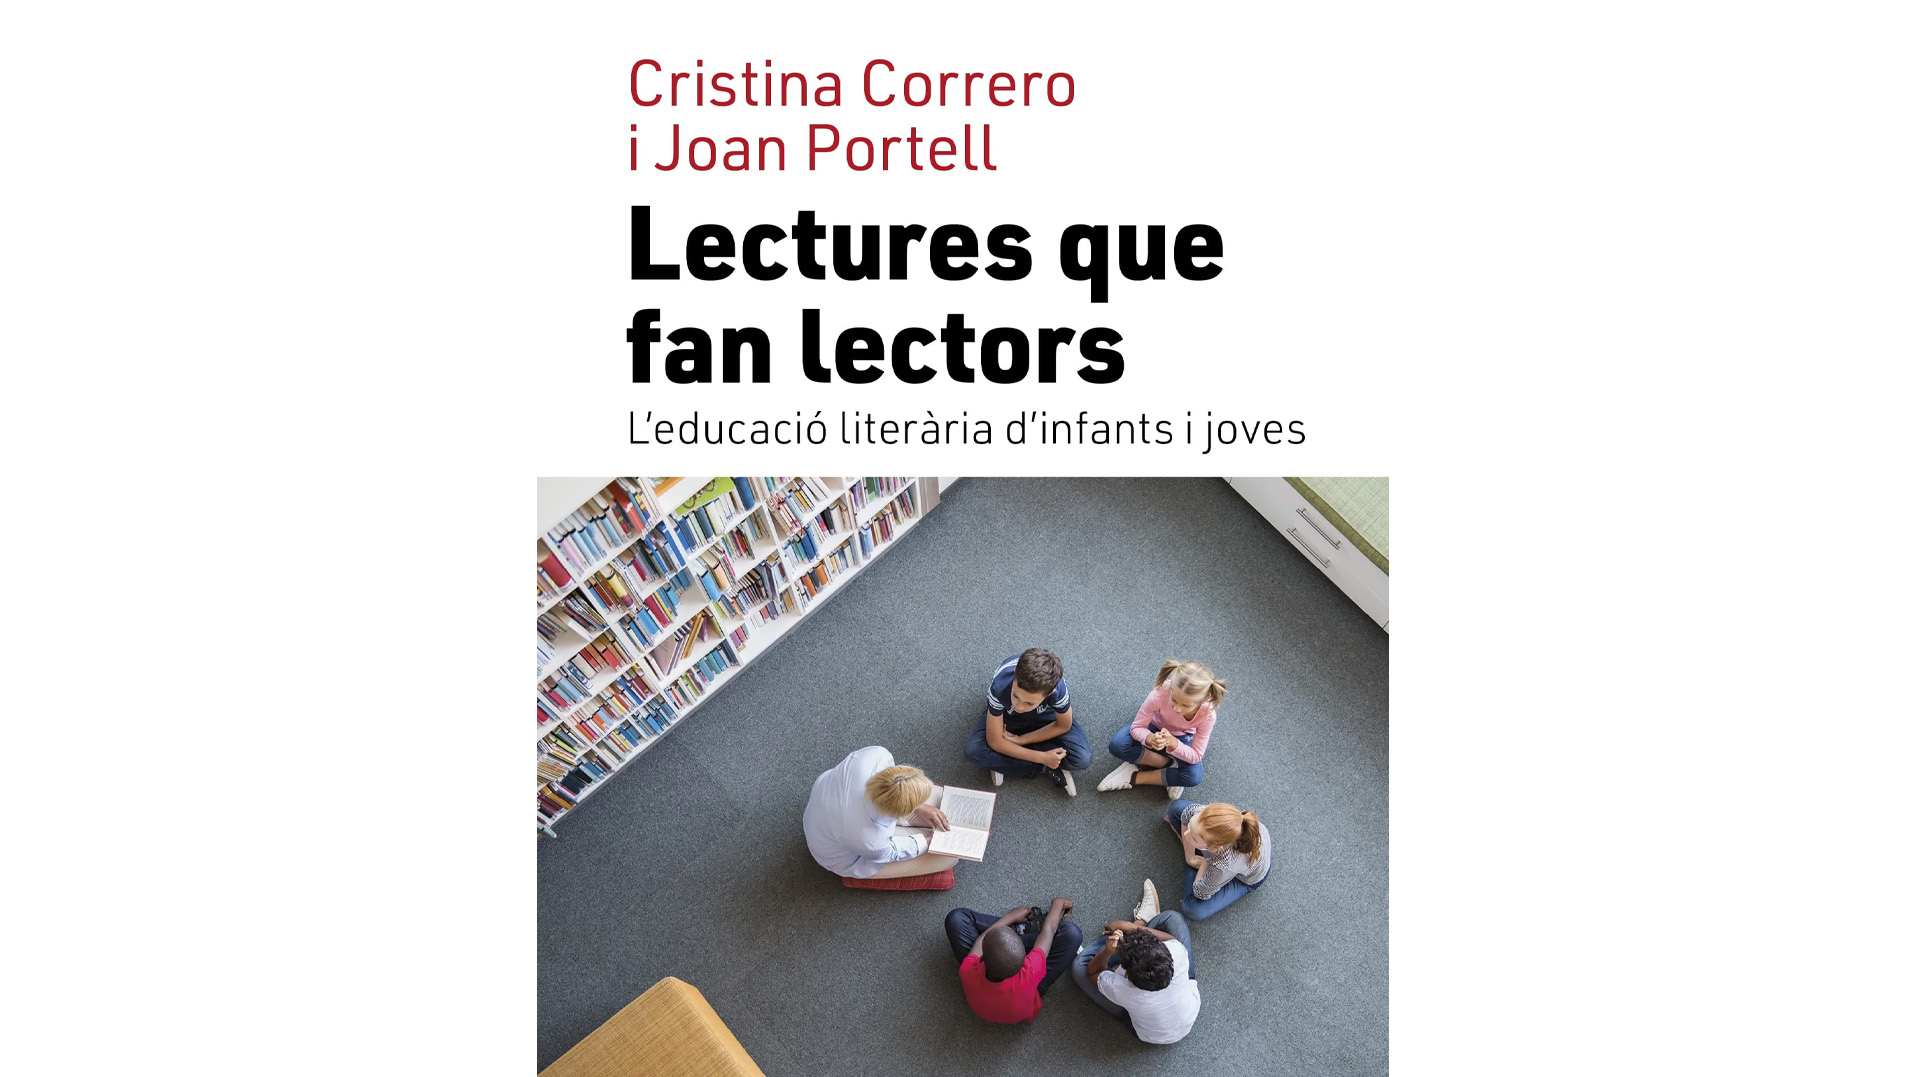 Presentació del llibre “Lectures que fan lectors”